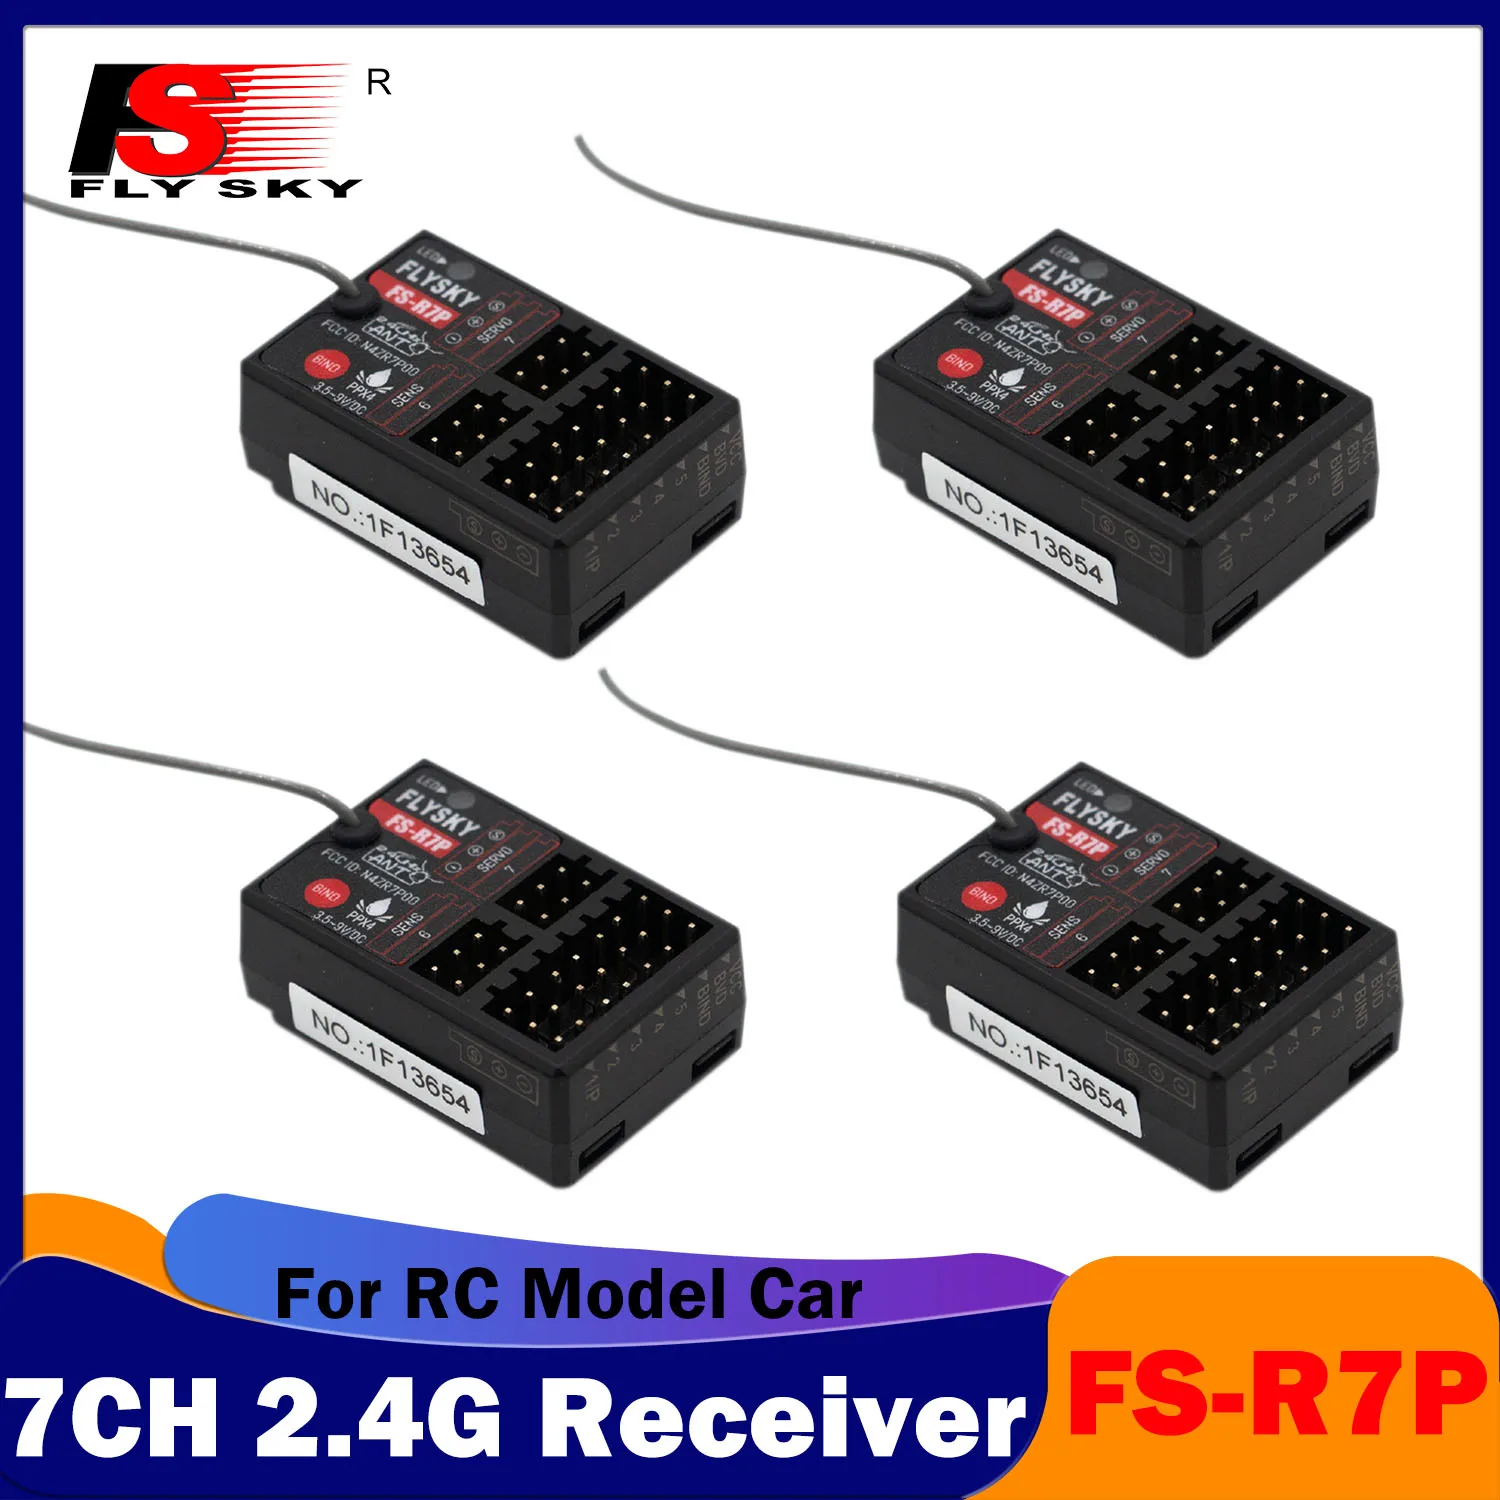 

Водонепроницаемый приемник FLYSKY FS-R7P 7CH 2,4G PPX4, 3,5-8,4 в, одинарная антенна, радио PWM для радиоуправляемой модели автомобиля, передатчик, дистанционное управление, детали для игрушек